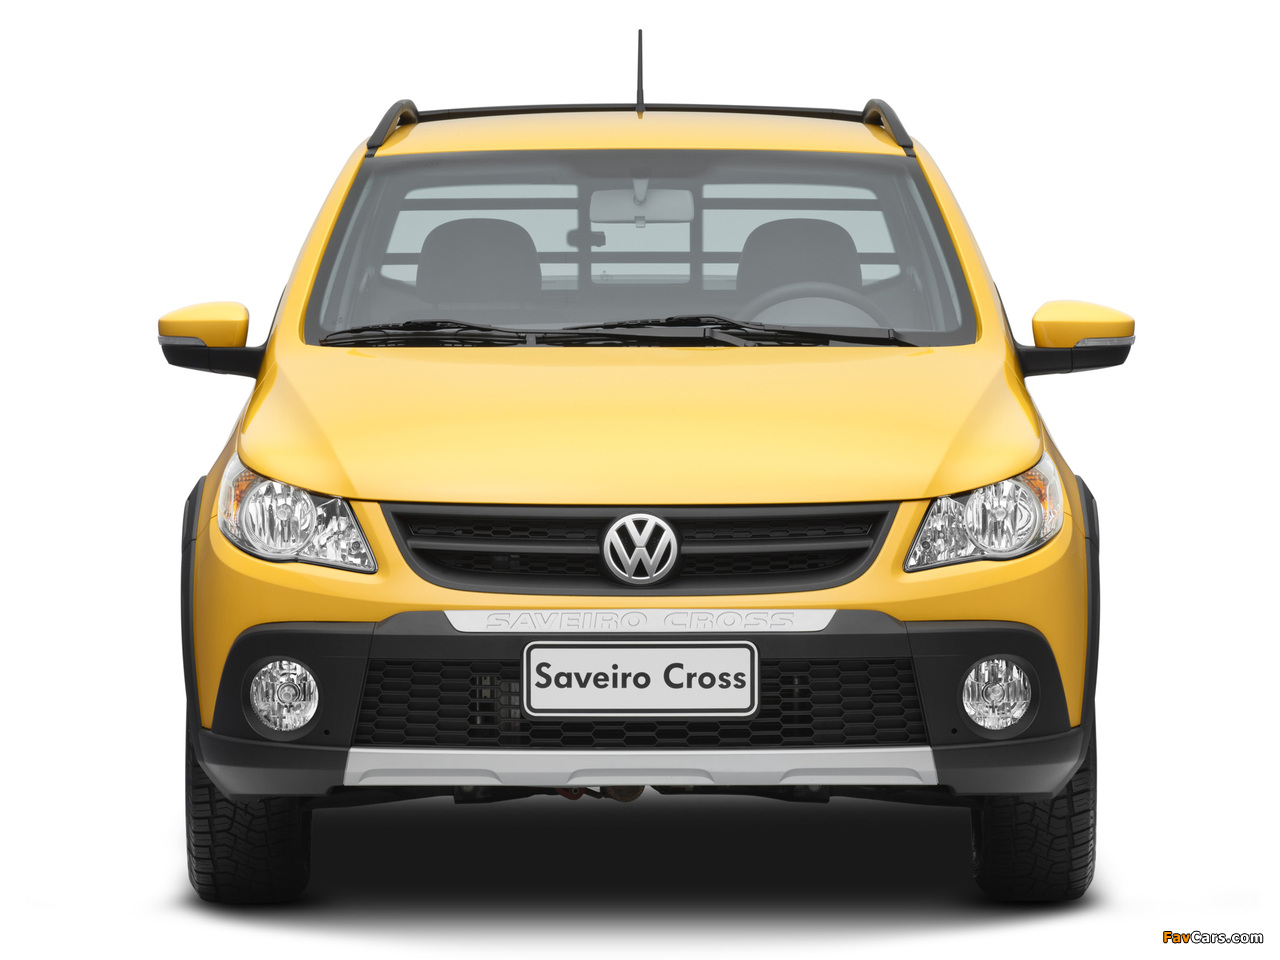 Volkswagen Saveiro Cross (V) 2010 pictures (1280 x 960)